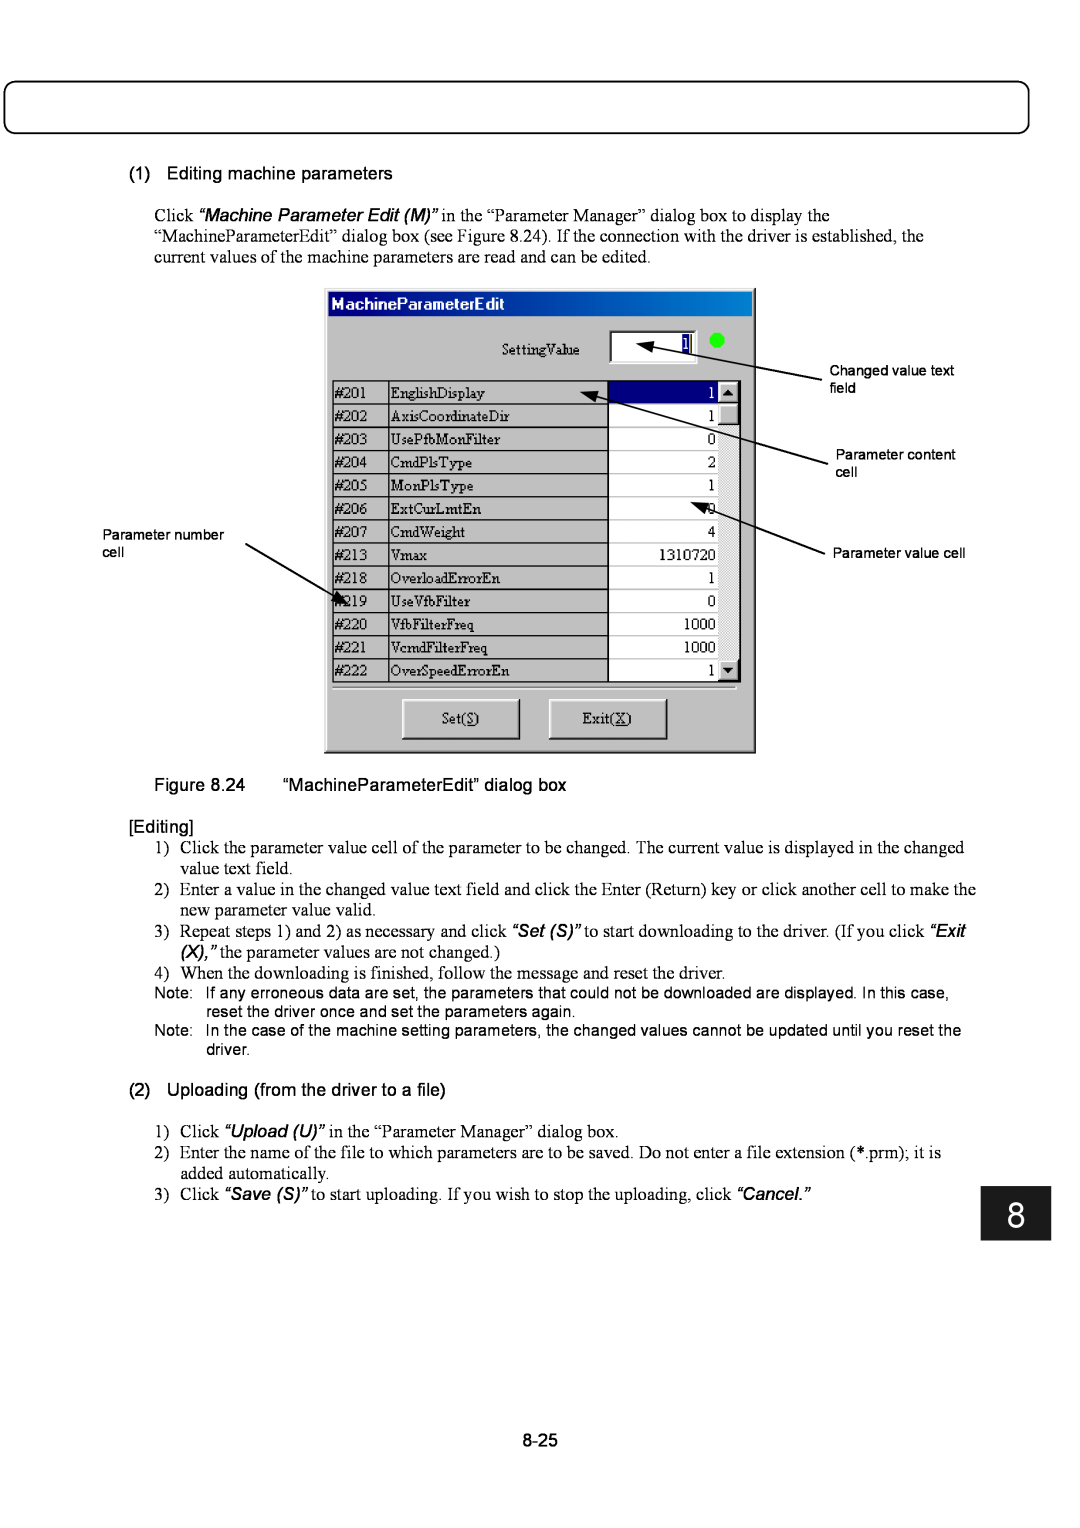 Parker Hannifin G2 manual Editing machine parameters, 24 “MachineParameterEdit” dialog box Editing, 8-25 